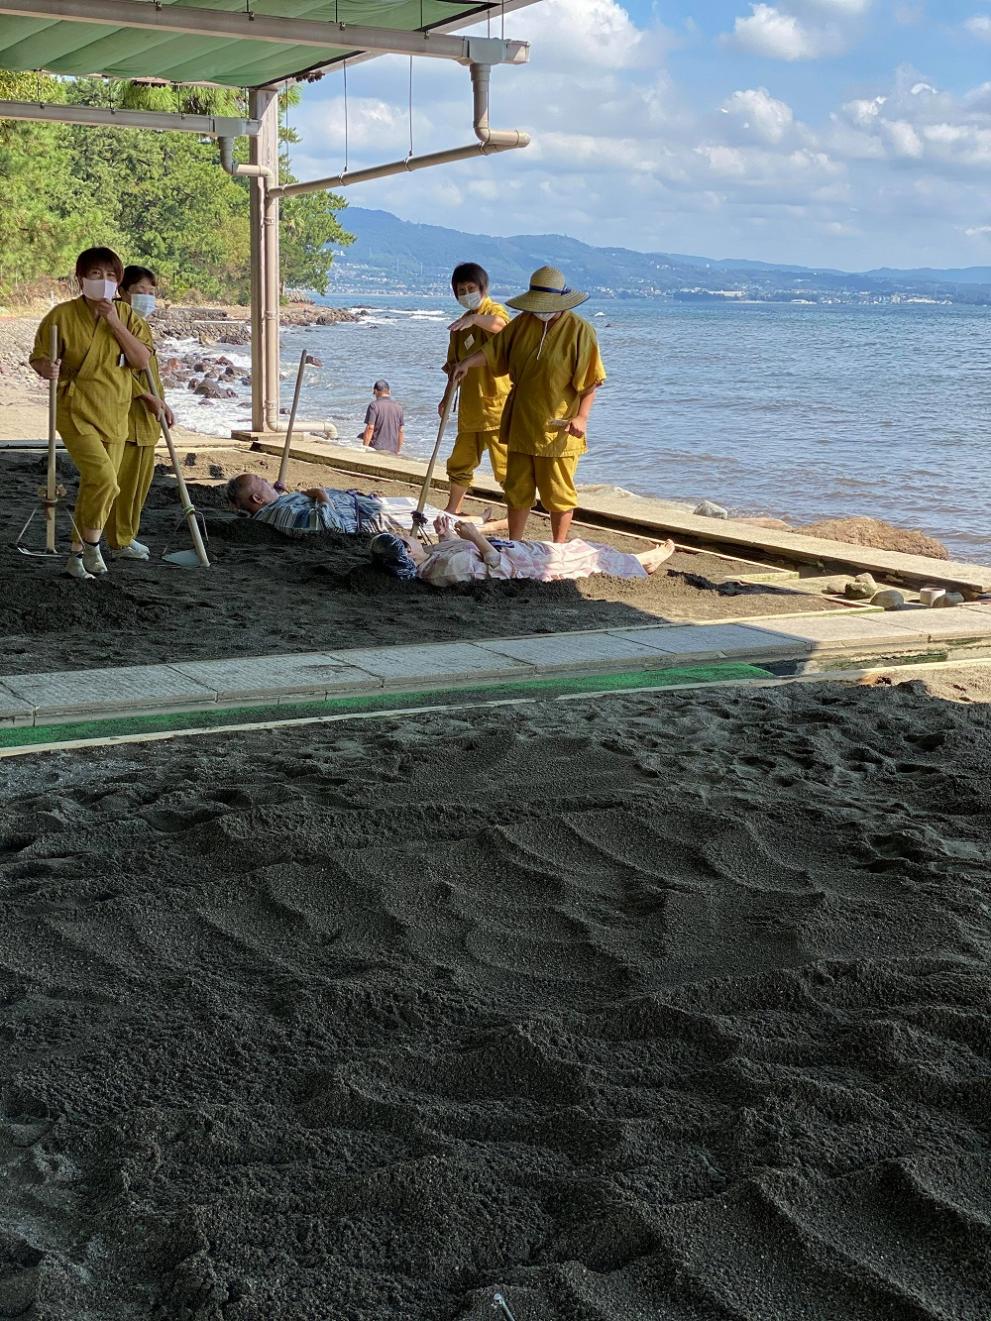 На плажа служители разравят пясъка, а под него остават клиентите. Температурата от горещата вода под пясъка е 41.1 градуса и има лечебни качества. Те са през целия ден с маски.